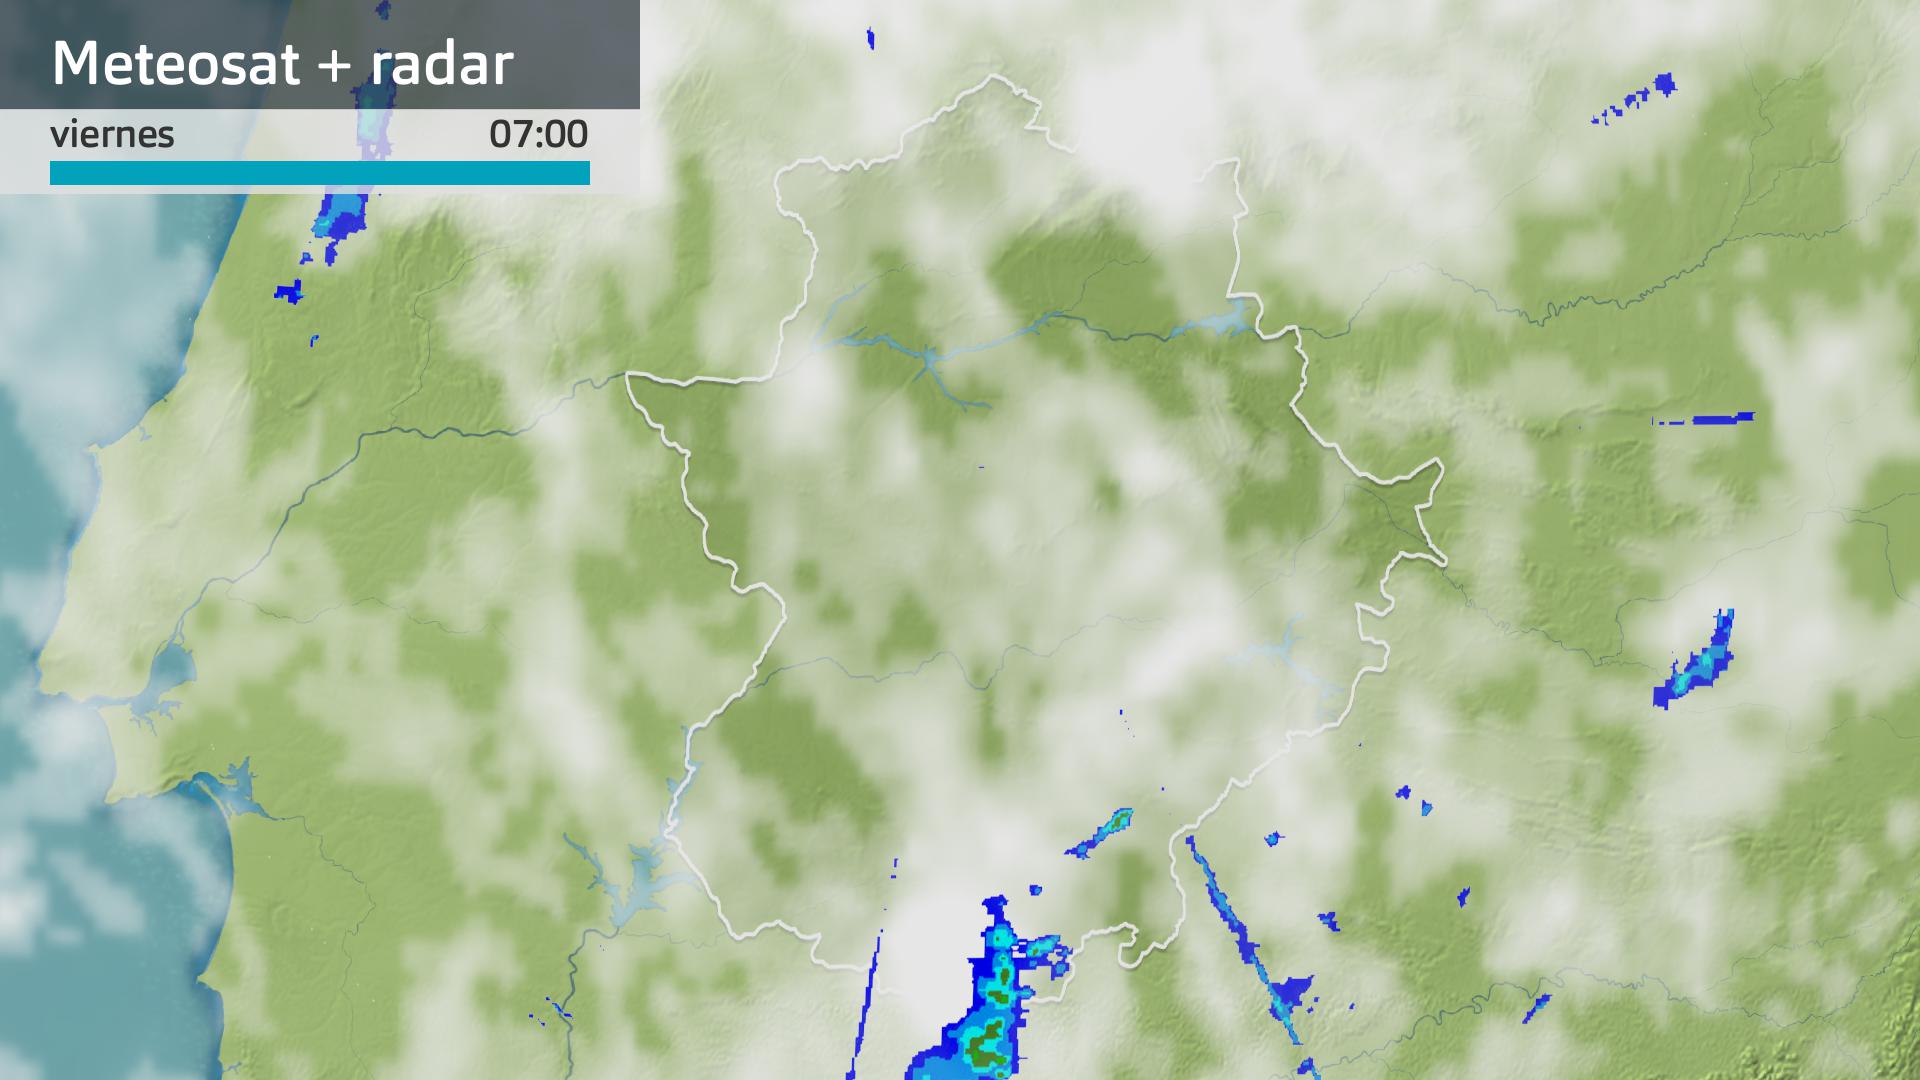 Imagen del Meteosat + radar meteorológico viernes 7 de junio 7 h.